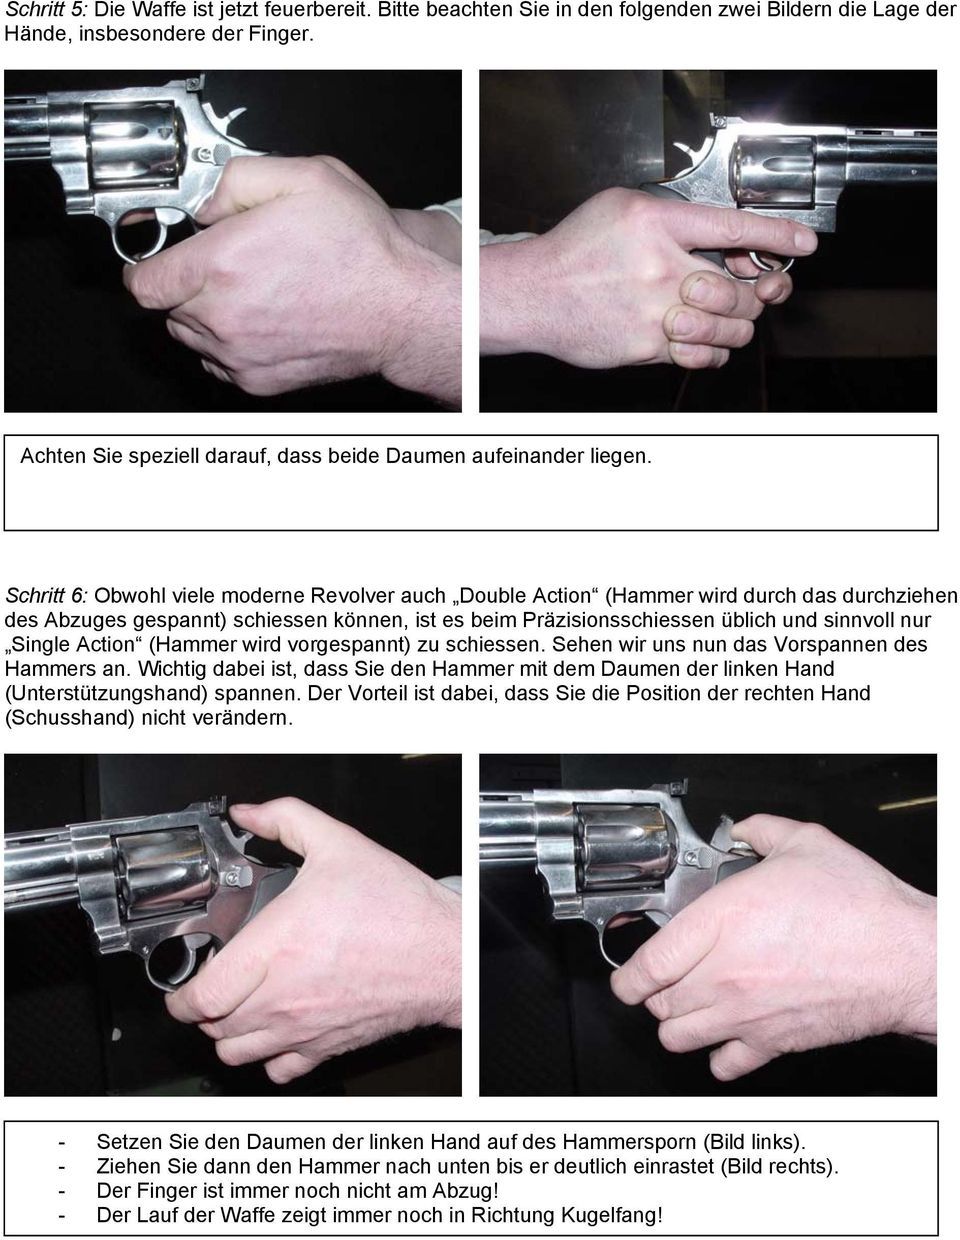 Schritt 6: Obwohl viele moderne Revolver auch Double Action (Hammer wird durch das durchziehen des Abzuges gespannt) schiessen können, ist es beim Präzisionsschiessen üblich und sinnvoll nur Single